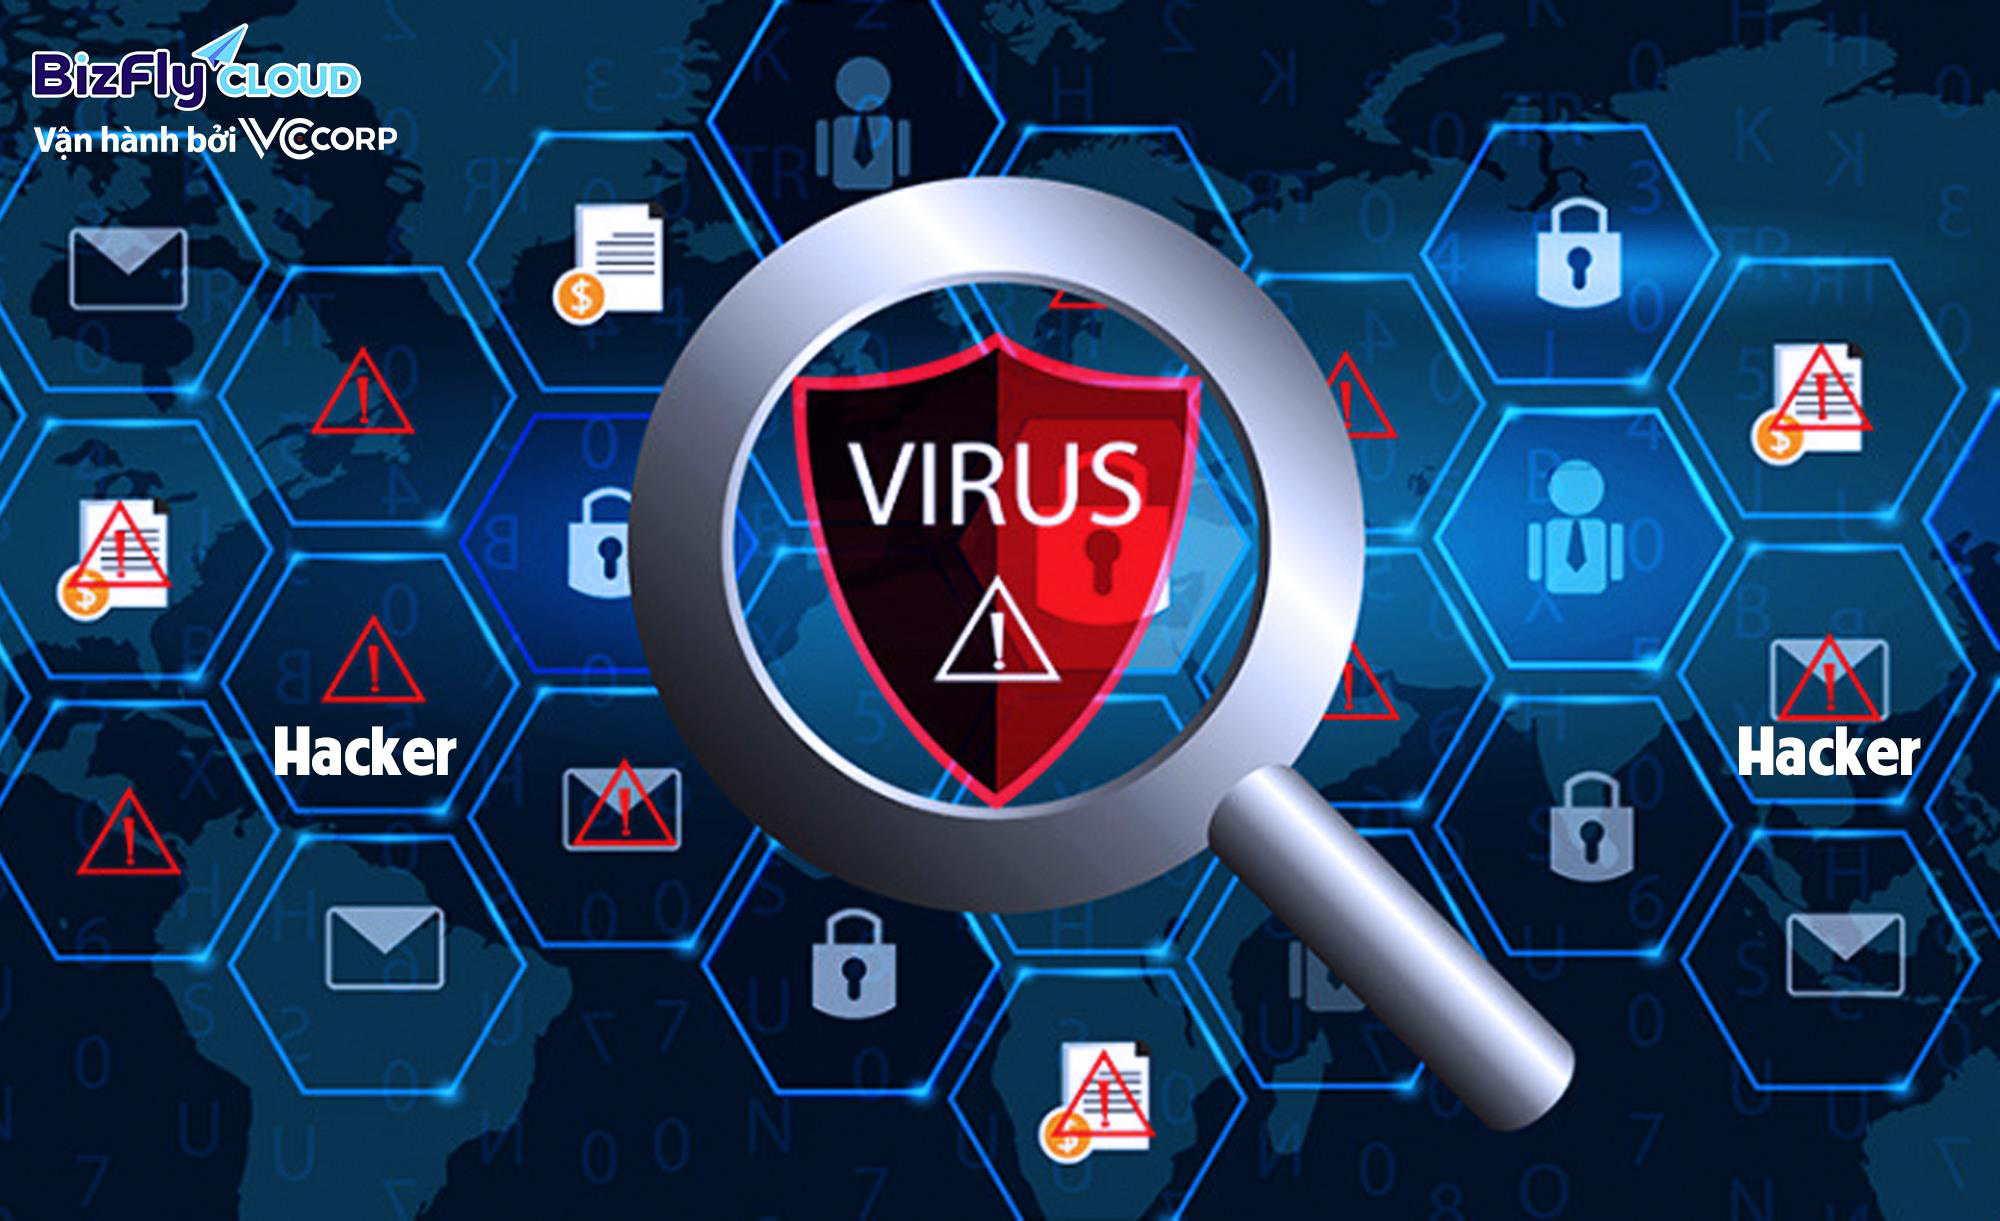 Virus antivirus. Антивирус. Антивирус картинки. Компьютерные антивирусы. Защита компьютера от вирусов.